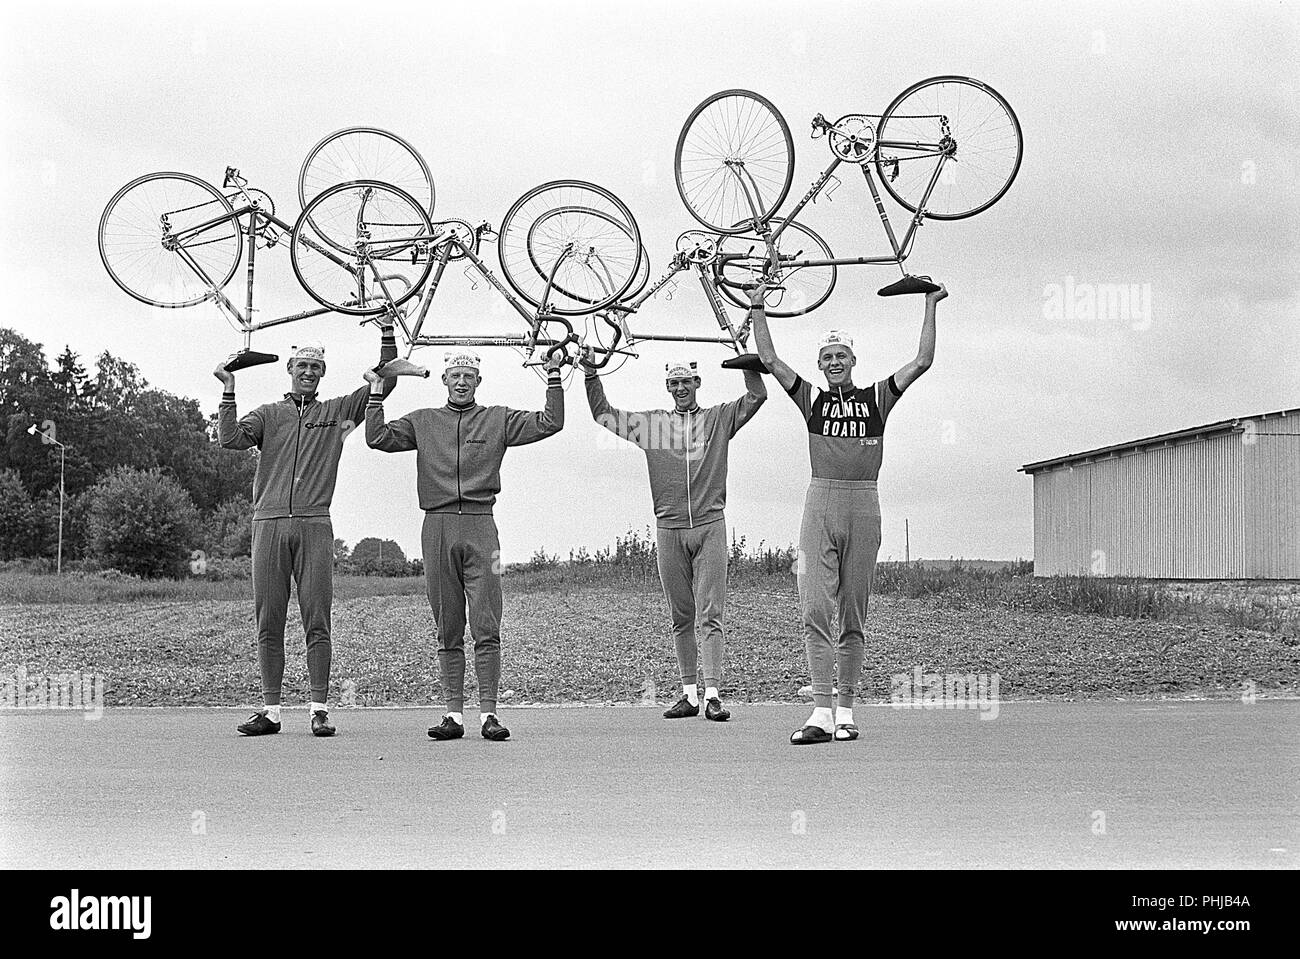 Anni sessanta ciclisti. Il Fåglum fratelli erano ciclista svedese Erik, Gösta, Sture e Tomas Pettersson. I fratelli ha vinto il team time trial mondiale amatoriale di ciclismo tra il 1967-1969 lungo con una medaglia d'argento alle 1968 Olimpiadi di estate. Essi sono stati aggiudicati la Svenska Dagbladet Gold Medal. La Svezia 1967 Foto Stock